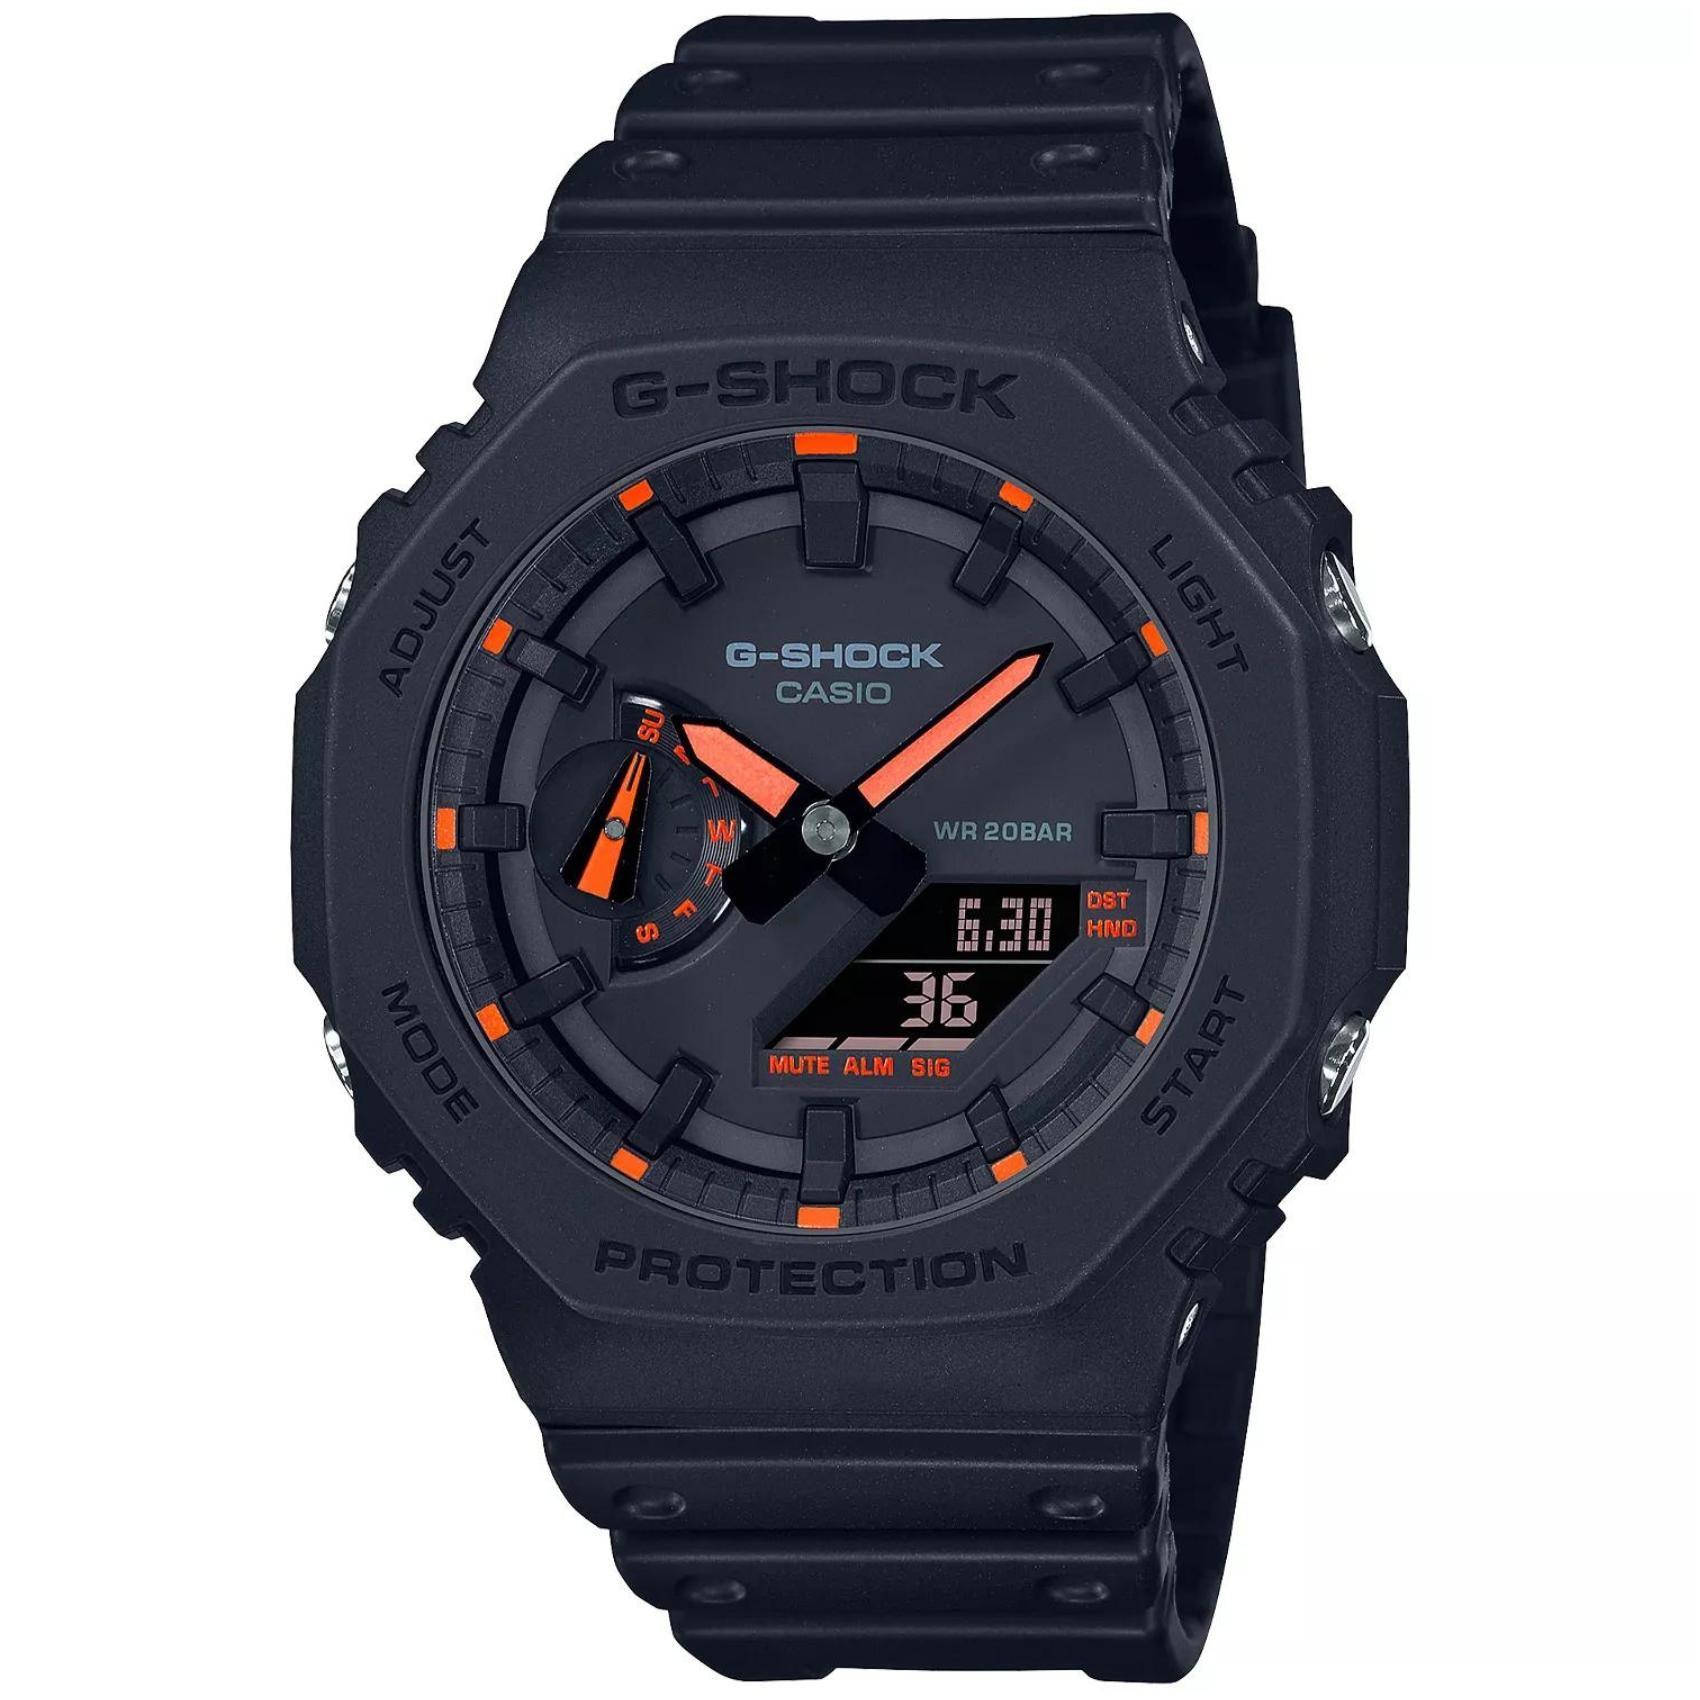 Ρολόι χρονογράφος Casio G-Shock GA-2100-1A4ER με μαύρο καουτσούκ λουράκι, μαύρο καντράν μεγέθους 45.4mm anadigi κατάλληλο για καταδύσεις.